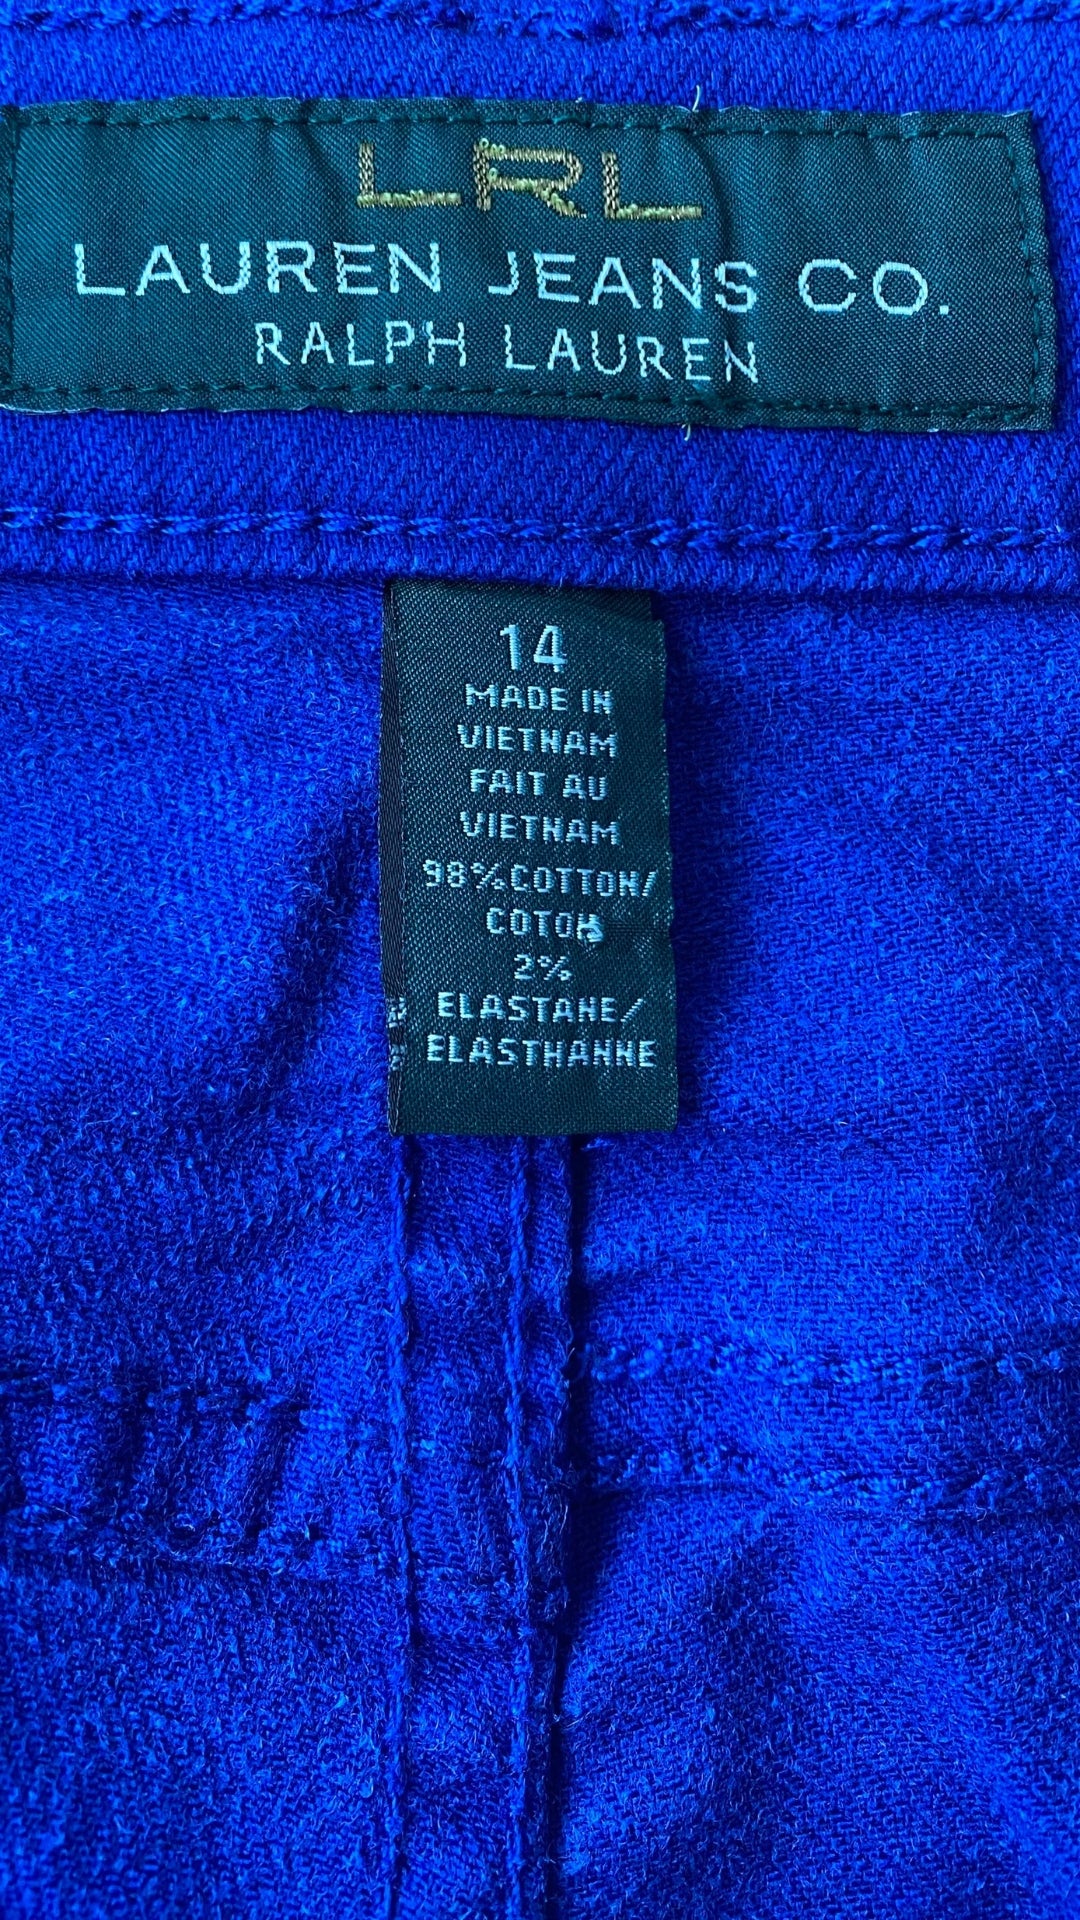 Pantalon en denim bleu royal Lauren Ralph Lauren, taille 14. Vue de l'étiquette de marque, taille et composition.